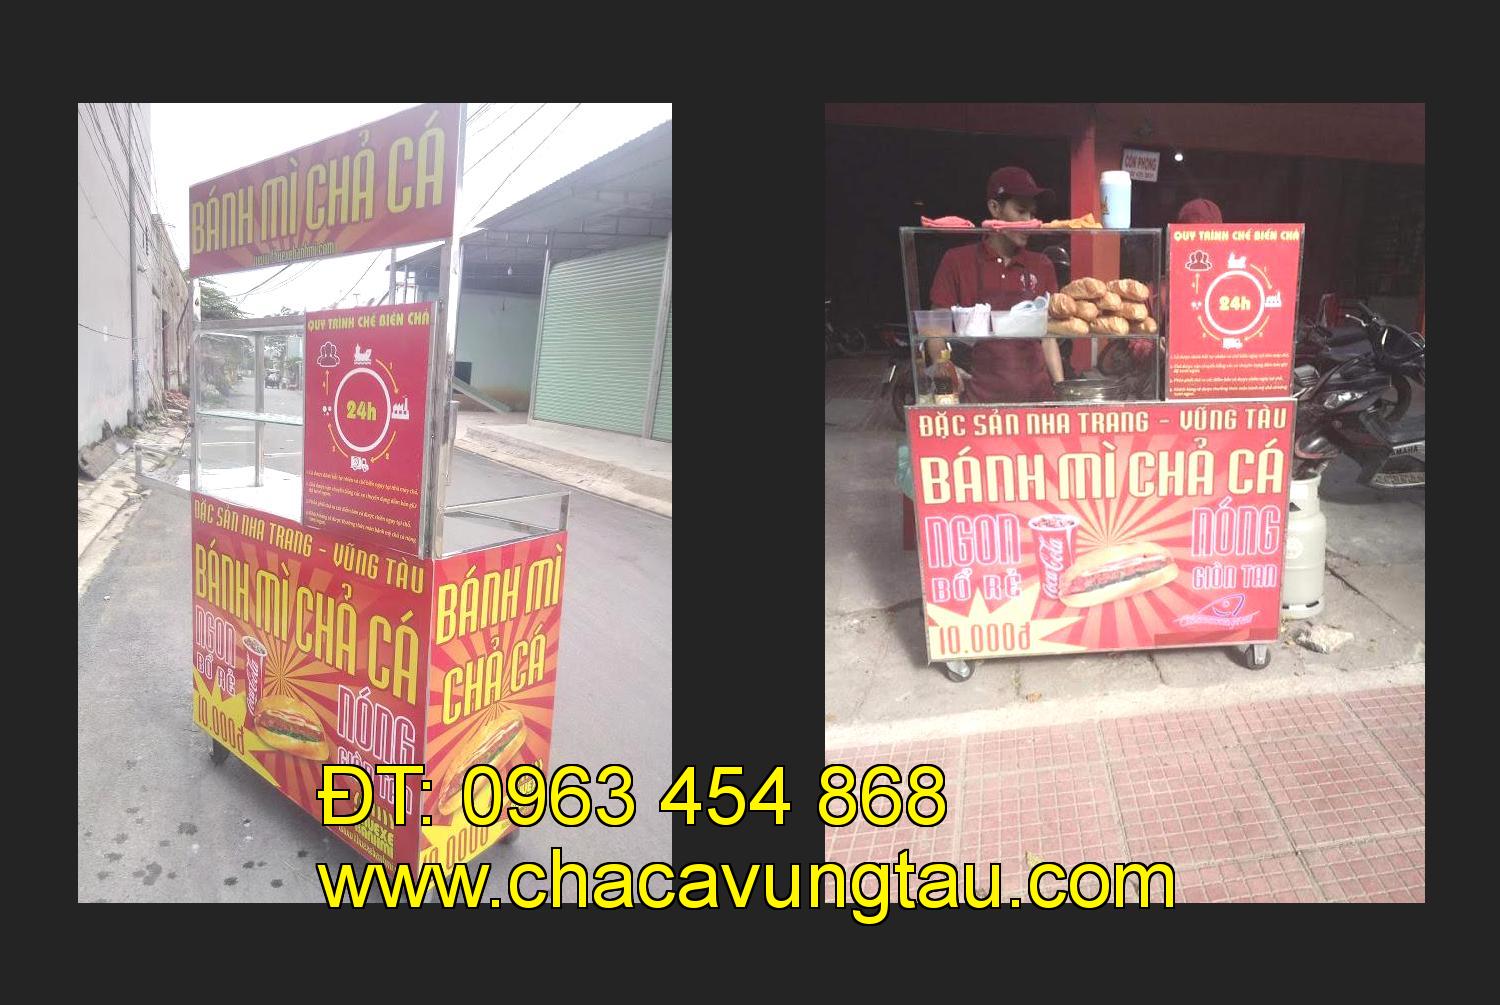 xe bánh mì chả cá giá rẻ tại tỉnh Đắk Lắk